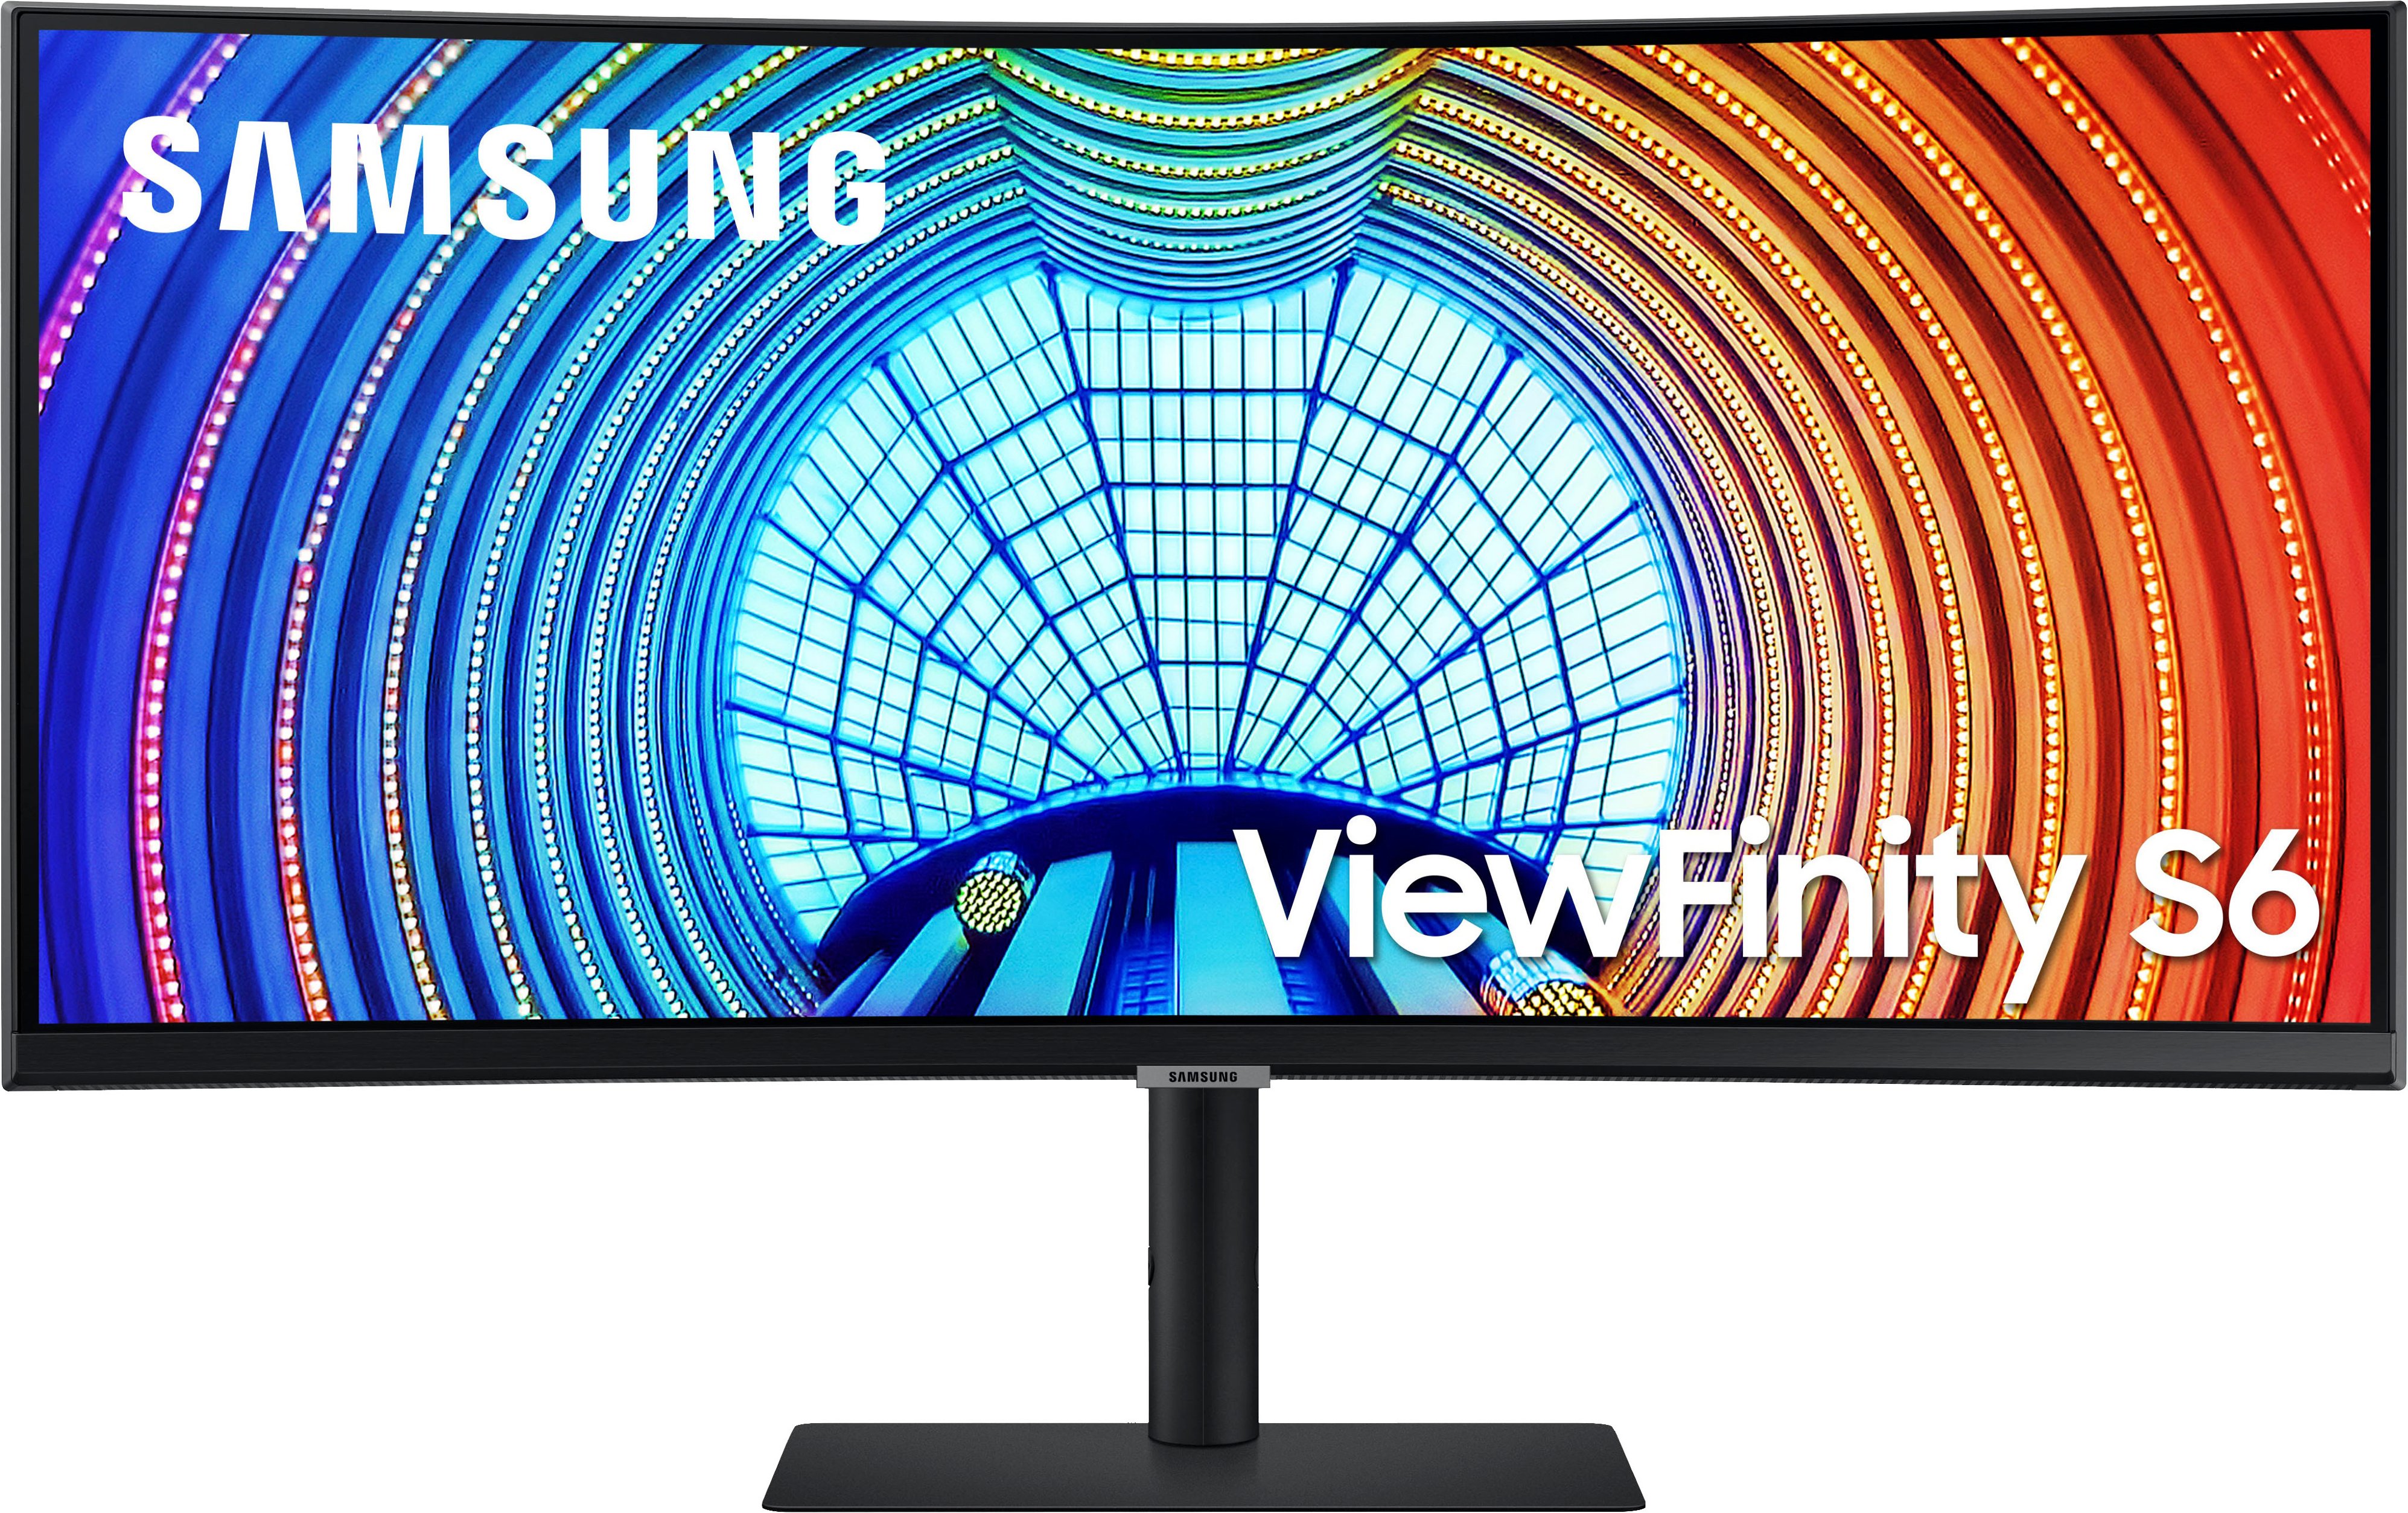 Visual TV Size Comparison : 55 inch 16x9 display vs 45 inch 21x9